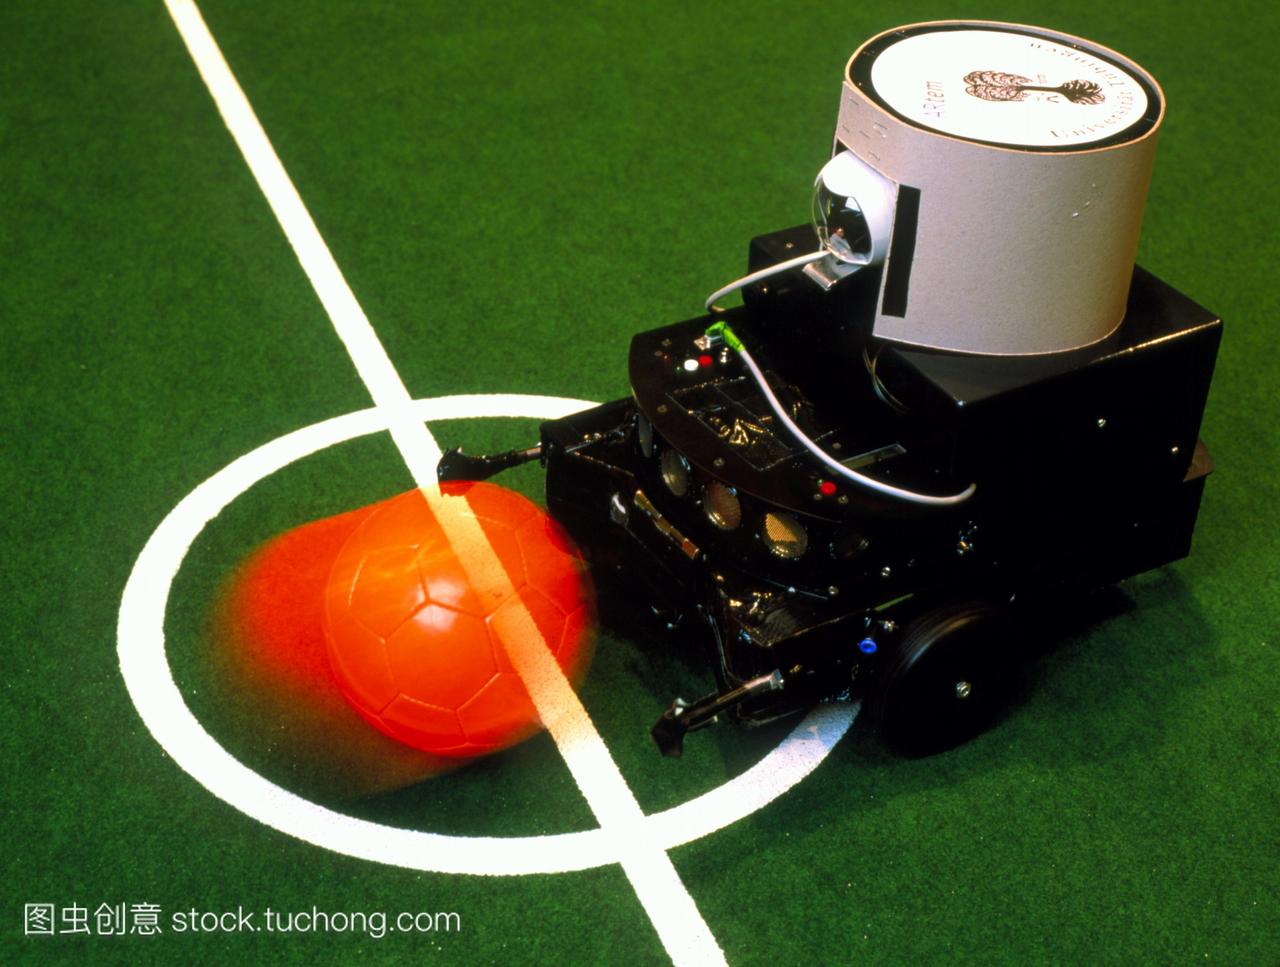 机器人足球。在1998年世界机器人足球锦标赛